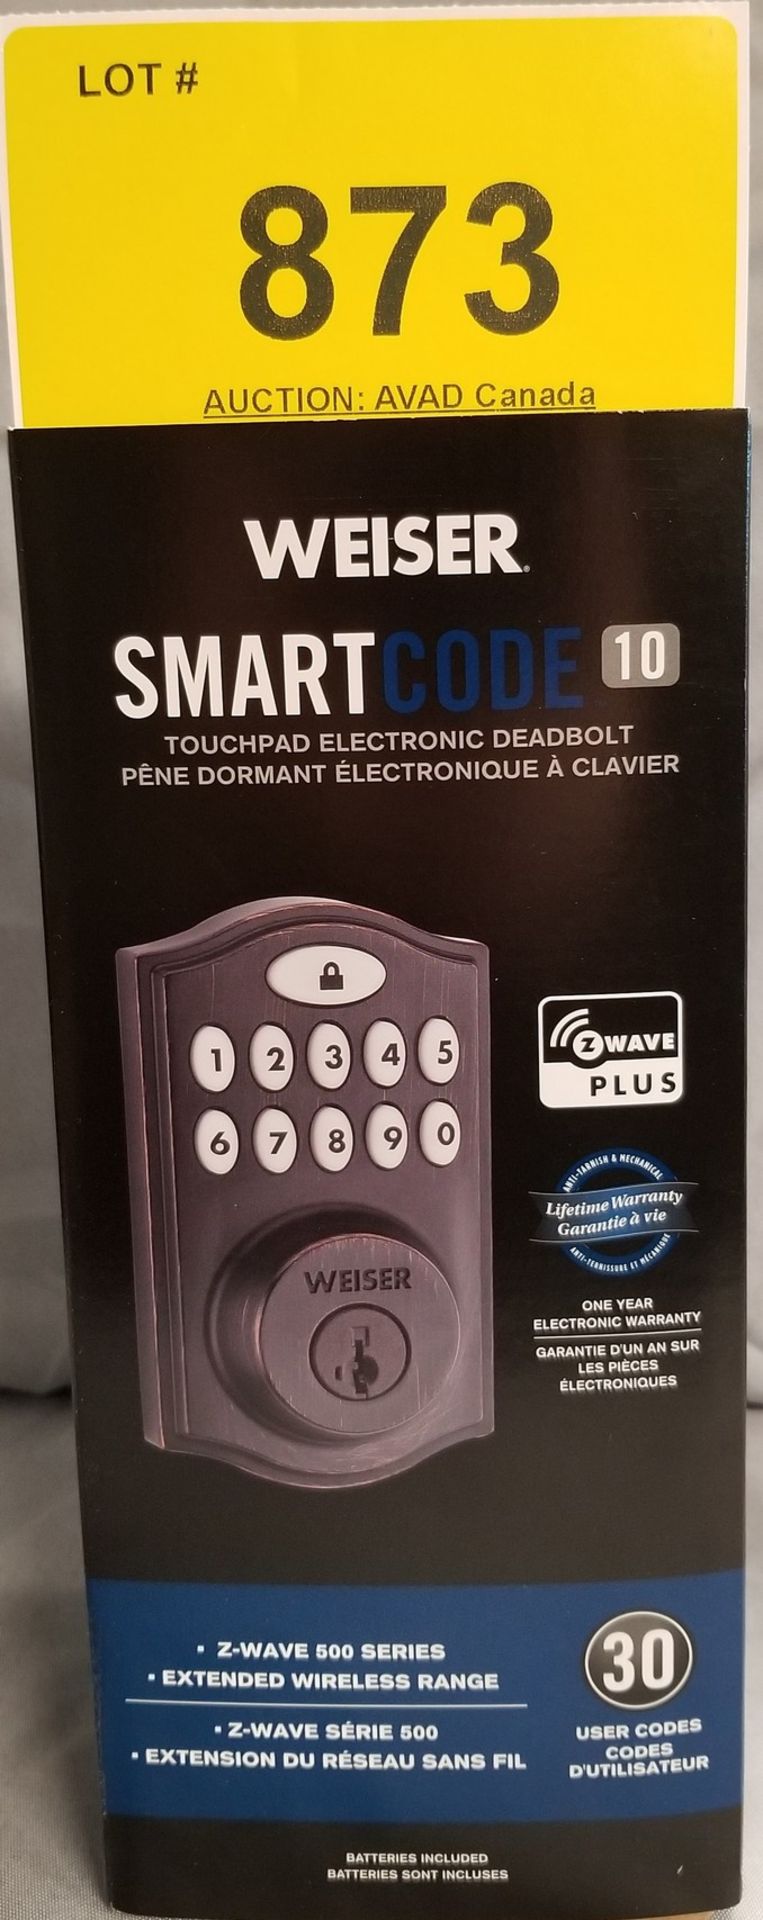 WEISER SMART CODE 10 TOUCHPAD ELECTRONIC DEADBOLT - (BNIB) MSRP $199